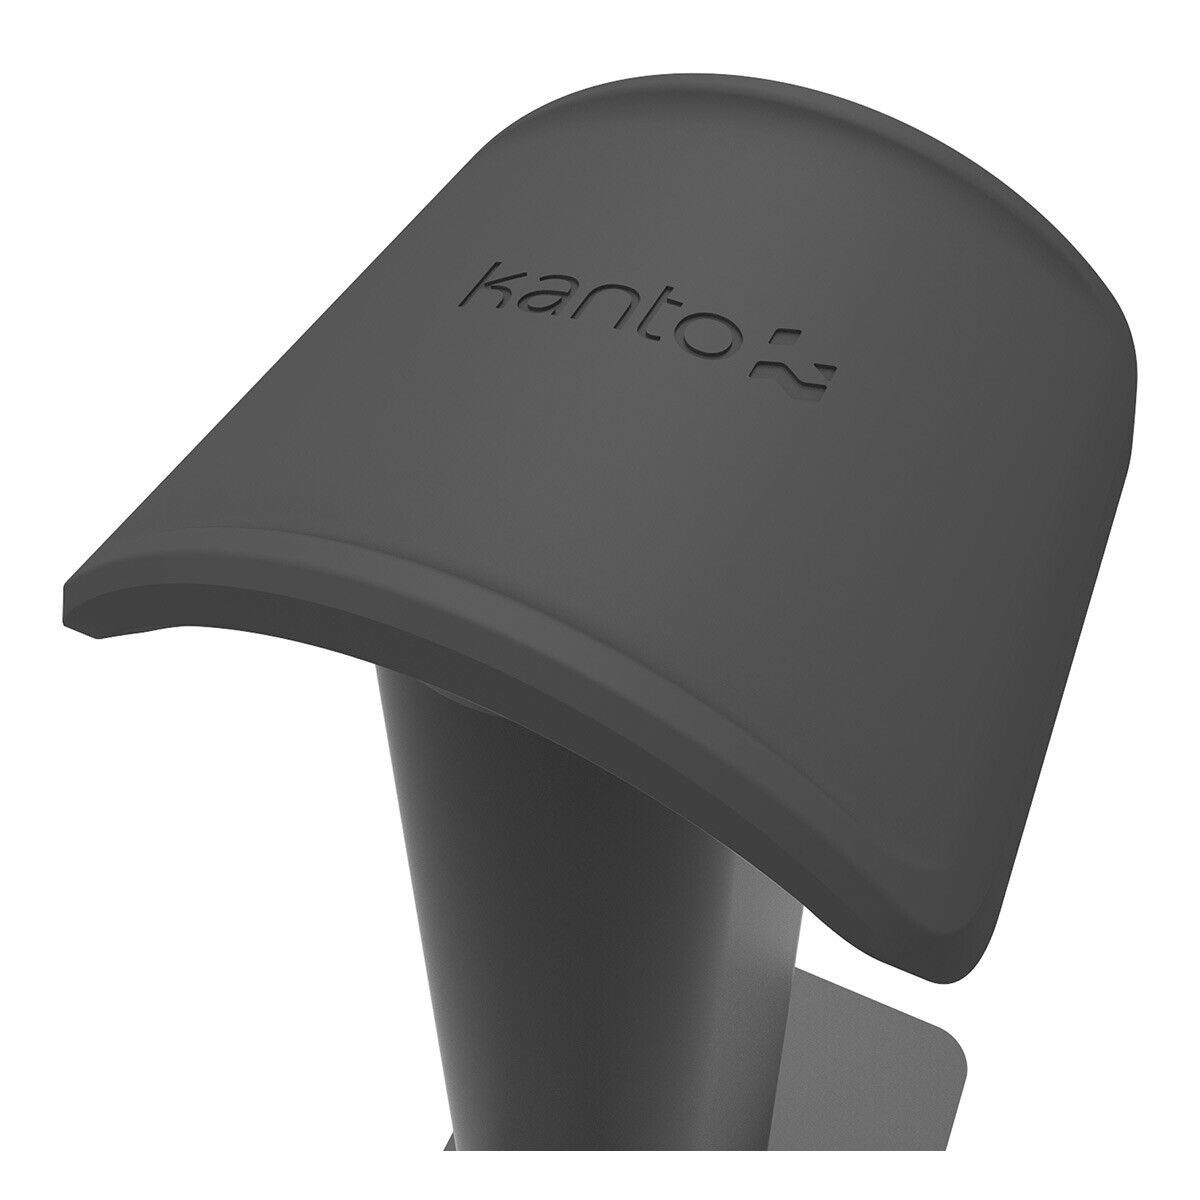 Kanto Premium Universal Headphone Stand - H2